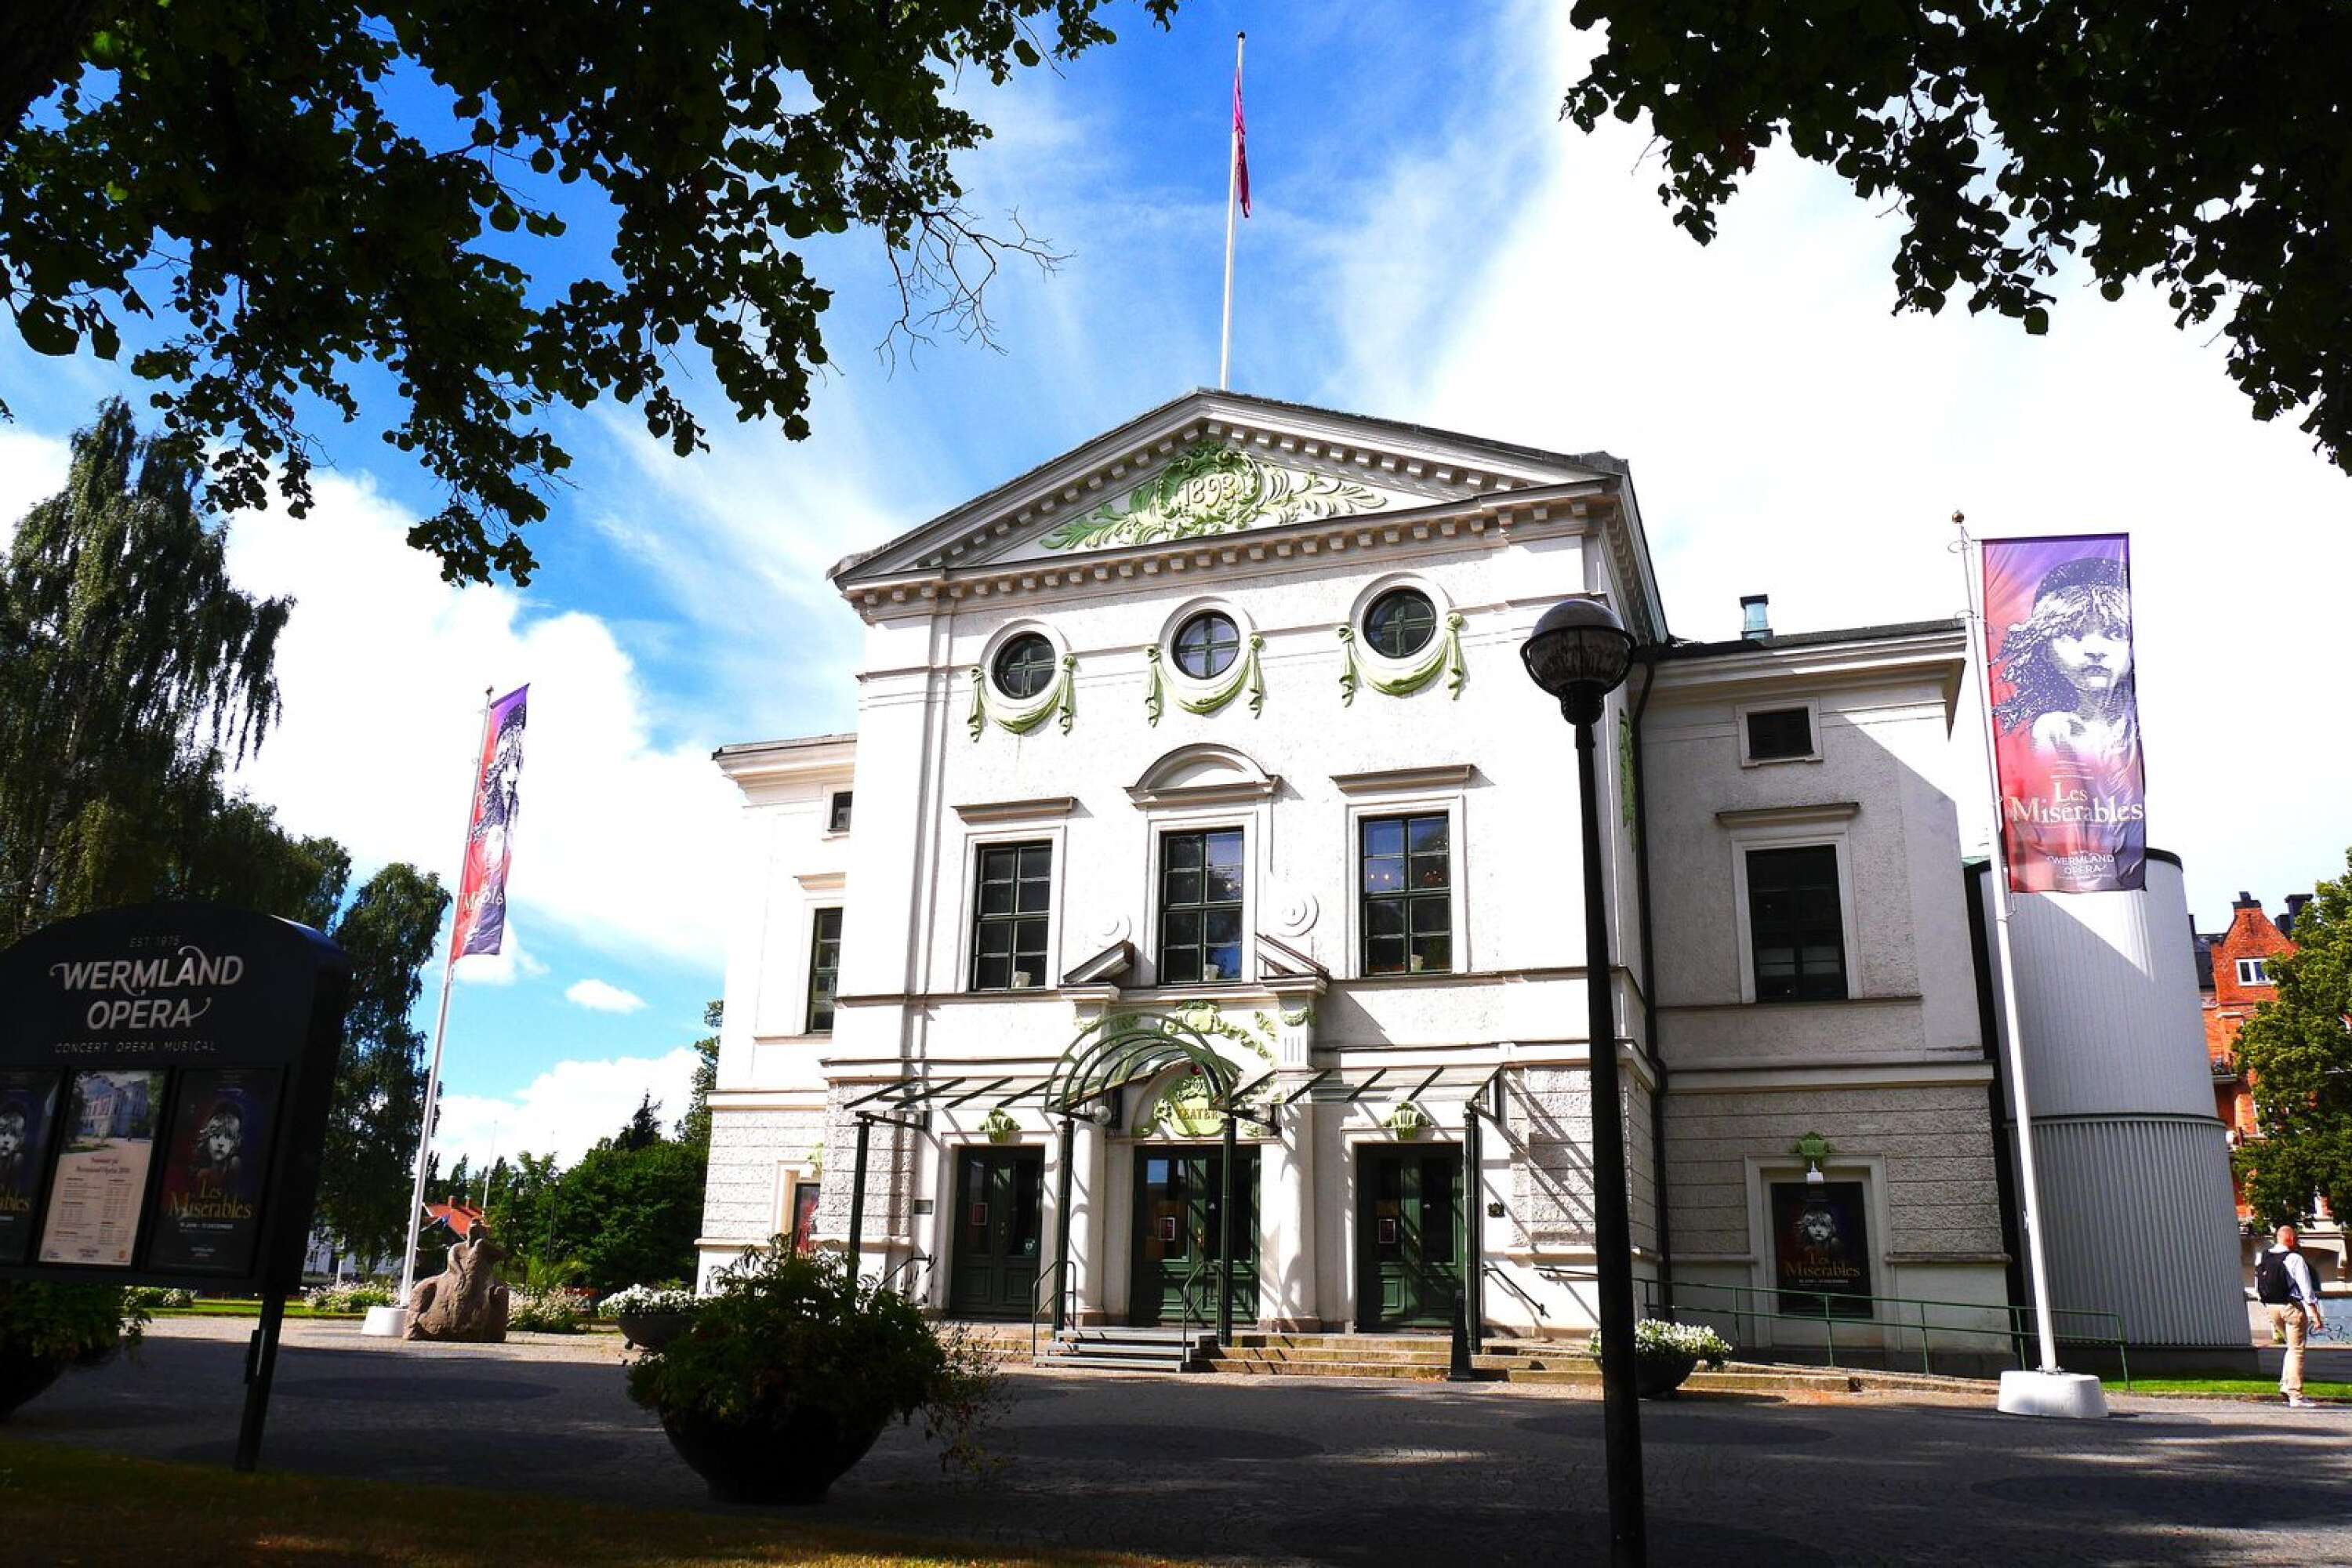 Karlstads kommun betalade 30 000 kronor till företaget för arbeten utförda på Värmlandsoperan.